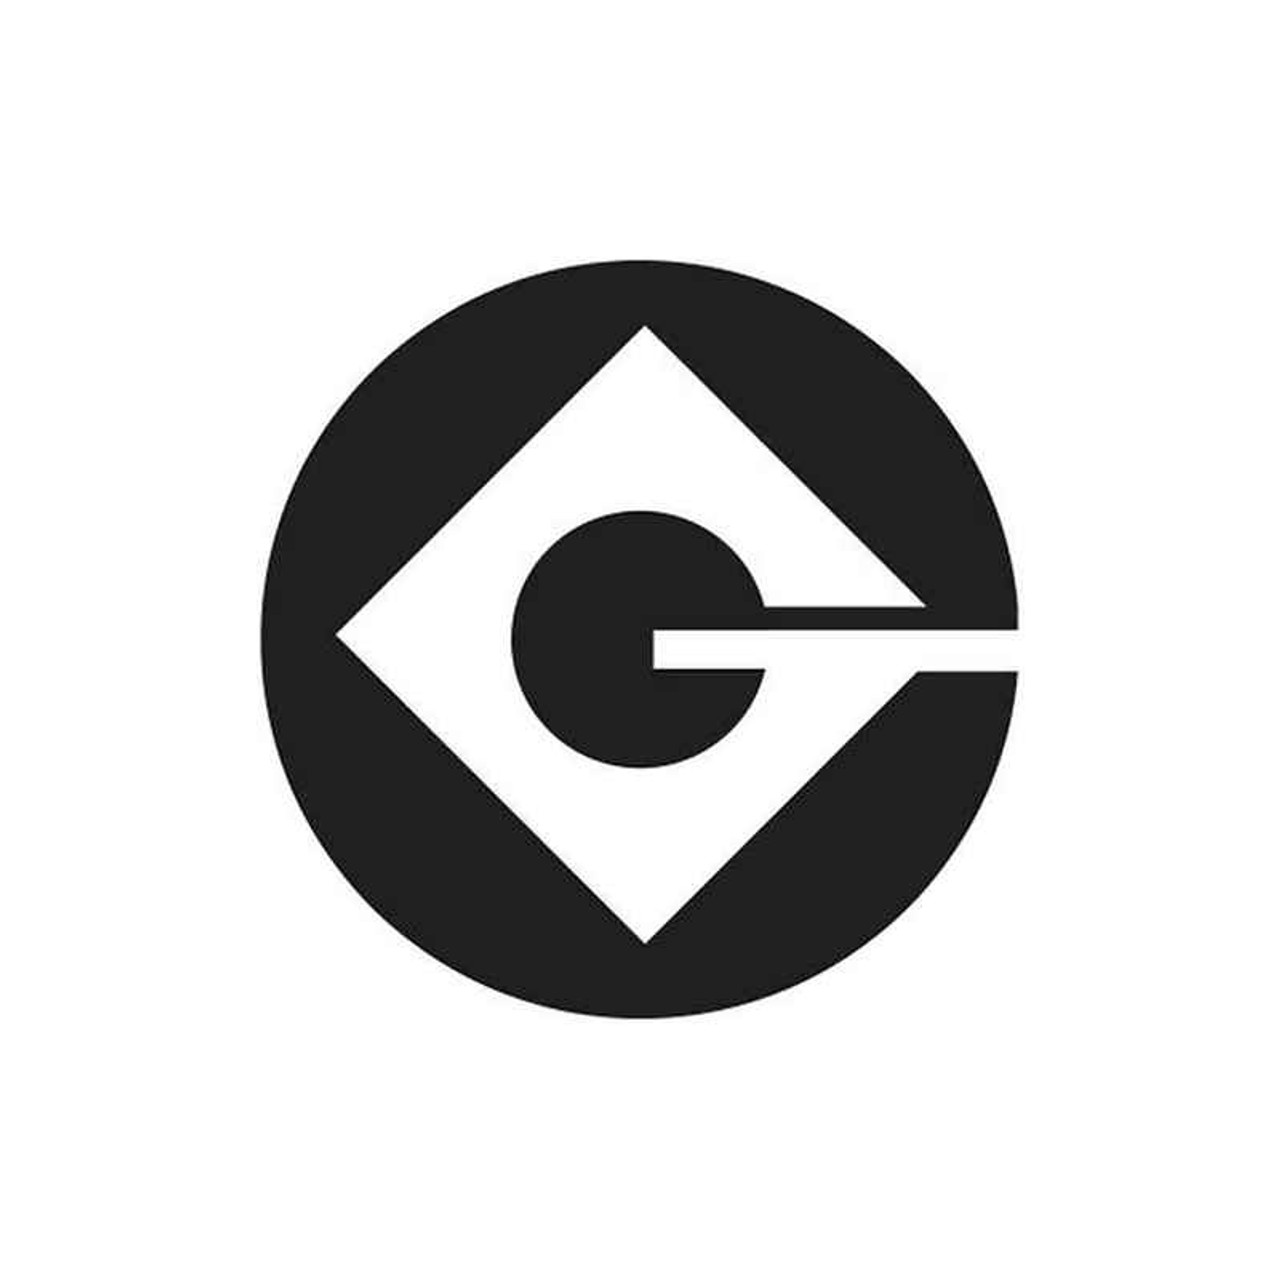 Gru Logo Printable Customize and Print